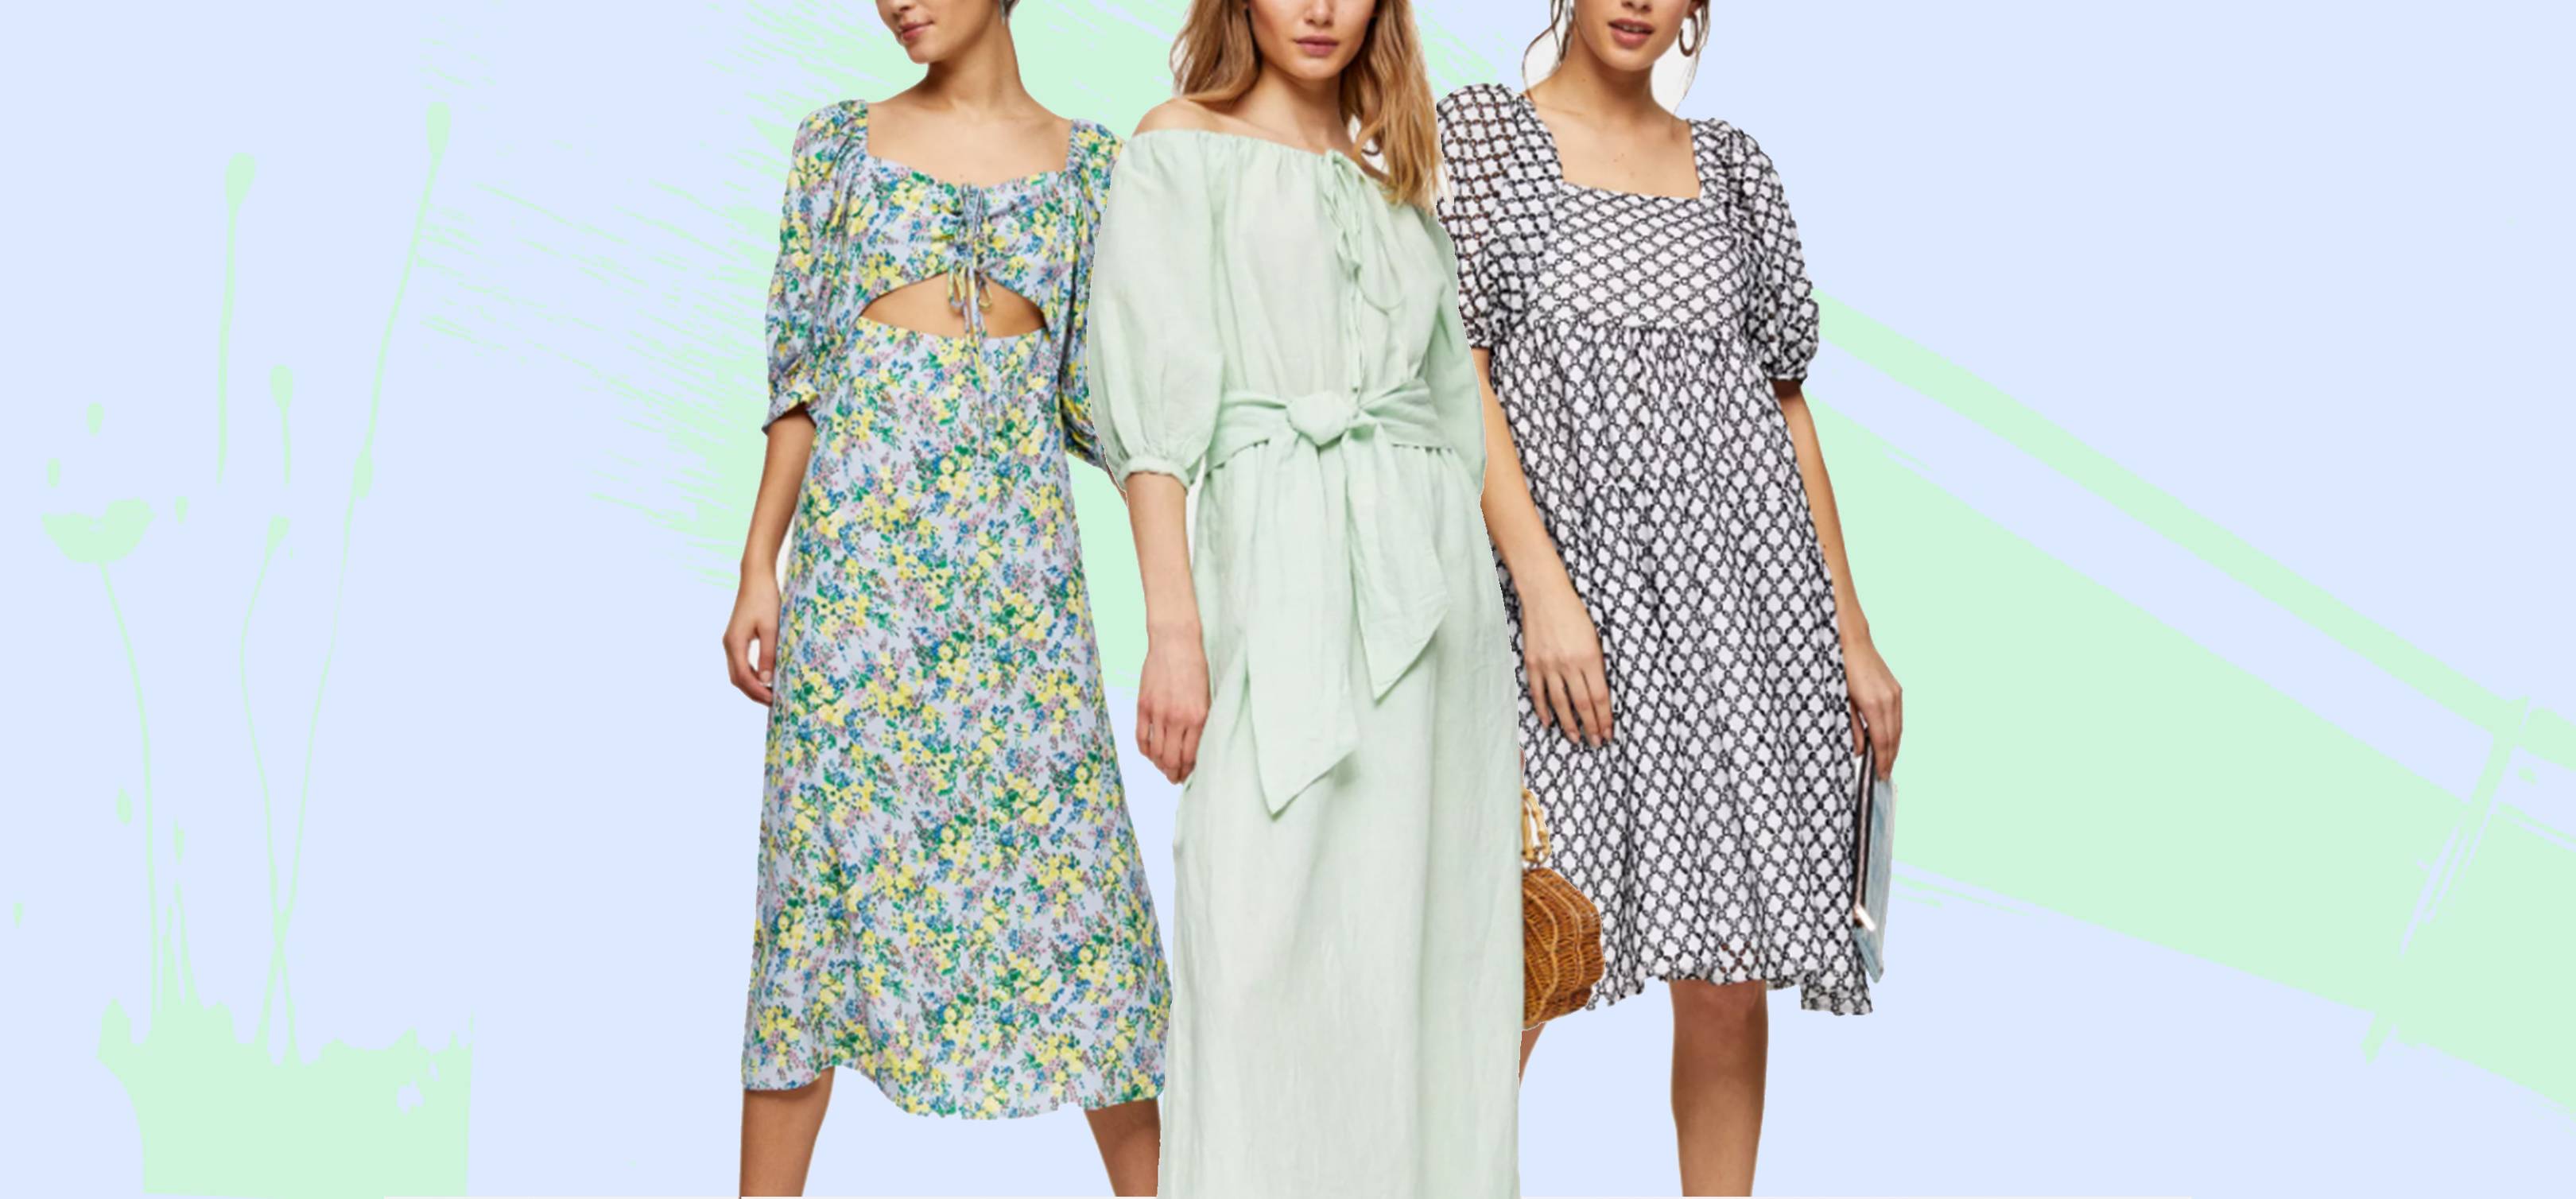 topshop summer dresses sale